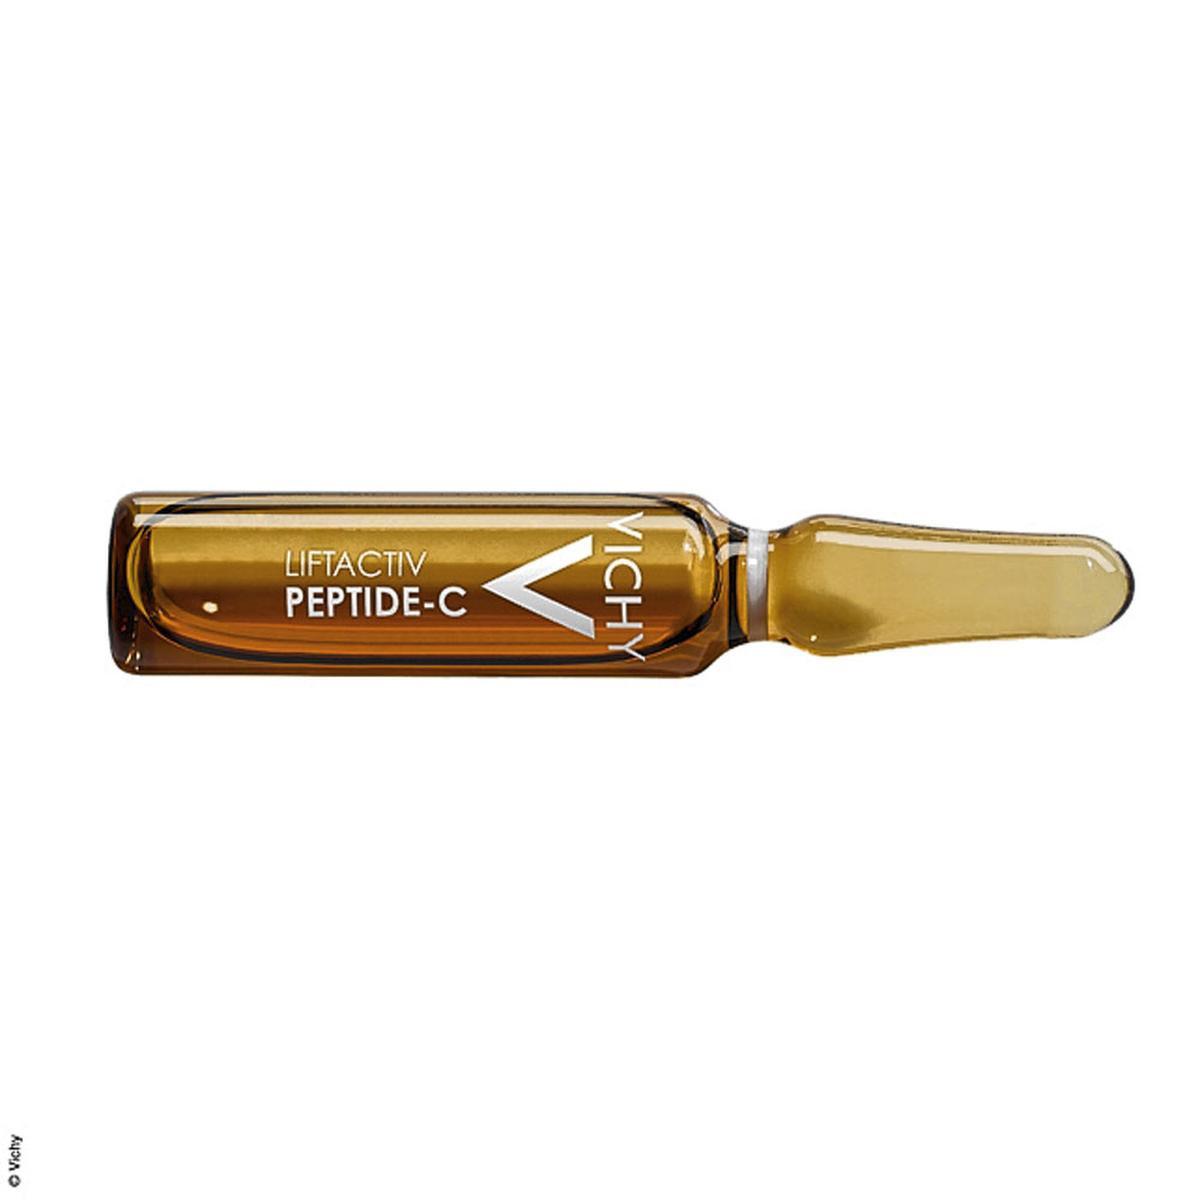 Sérum anti-âge Liftactiv peptide-C, Vichy, 55 euros les 30 ampoules (en pharmacie).